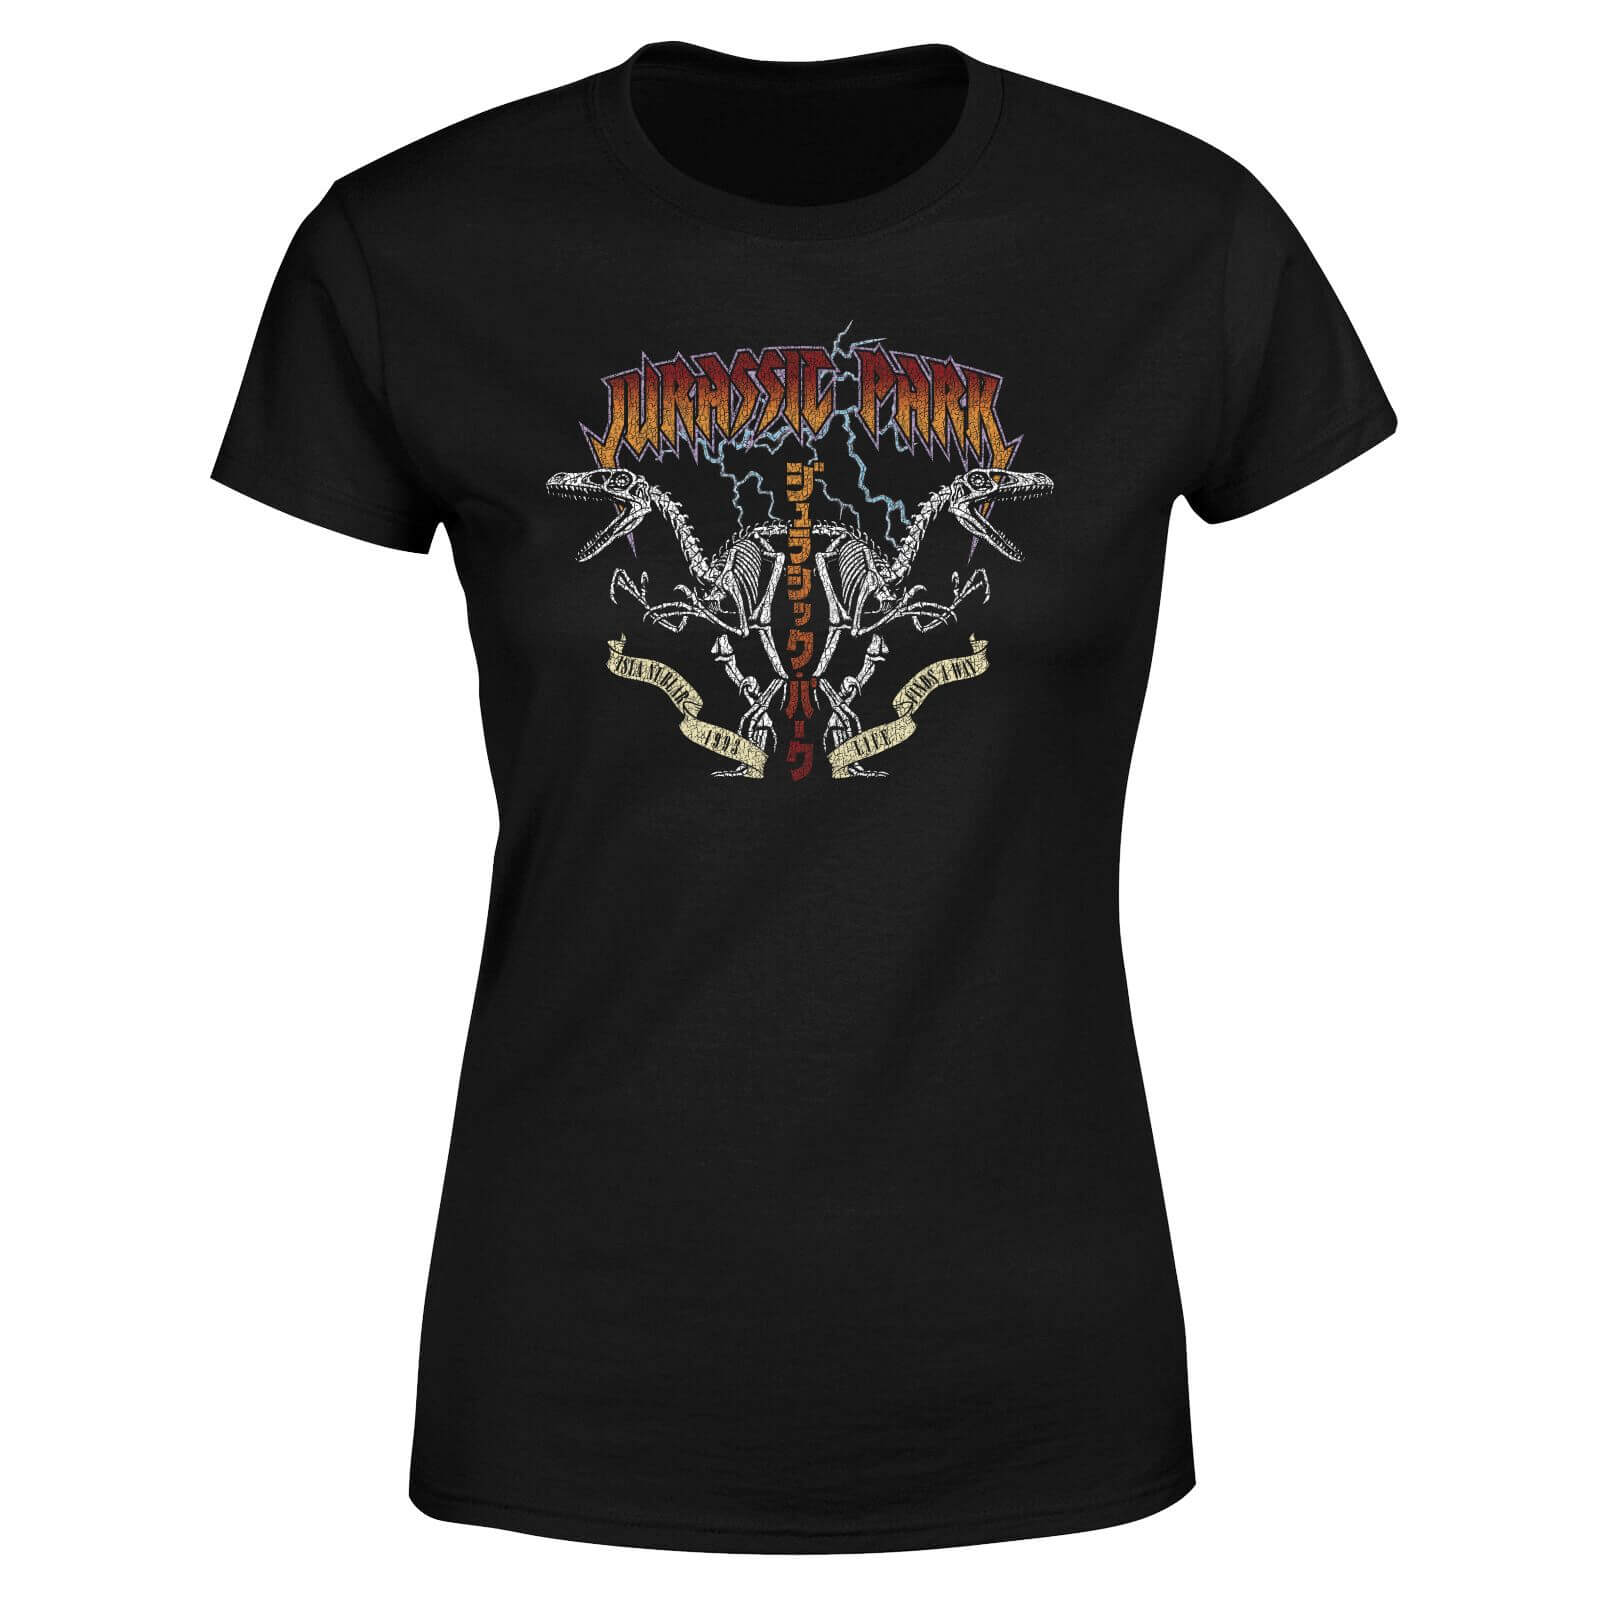  womens jurassic park raptor twinz t-shirt